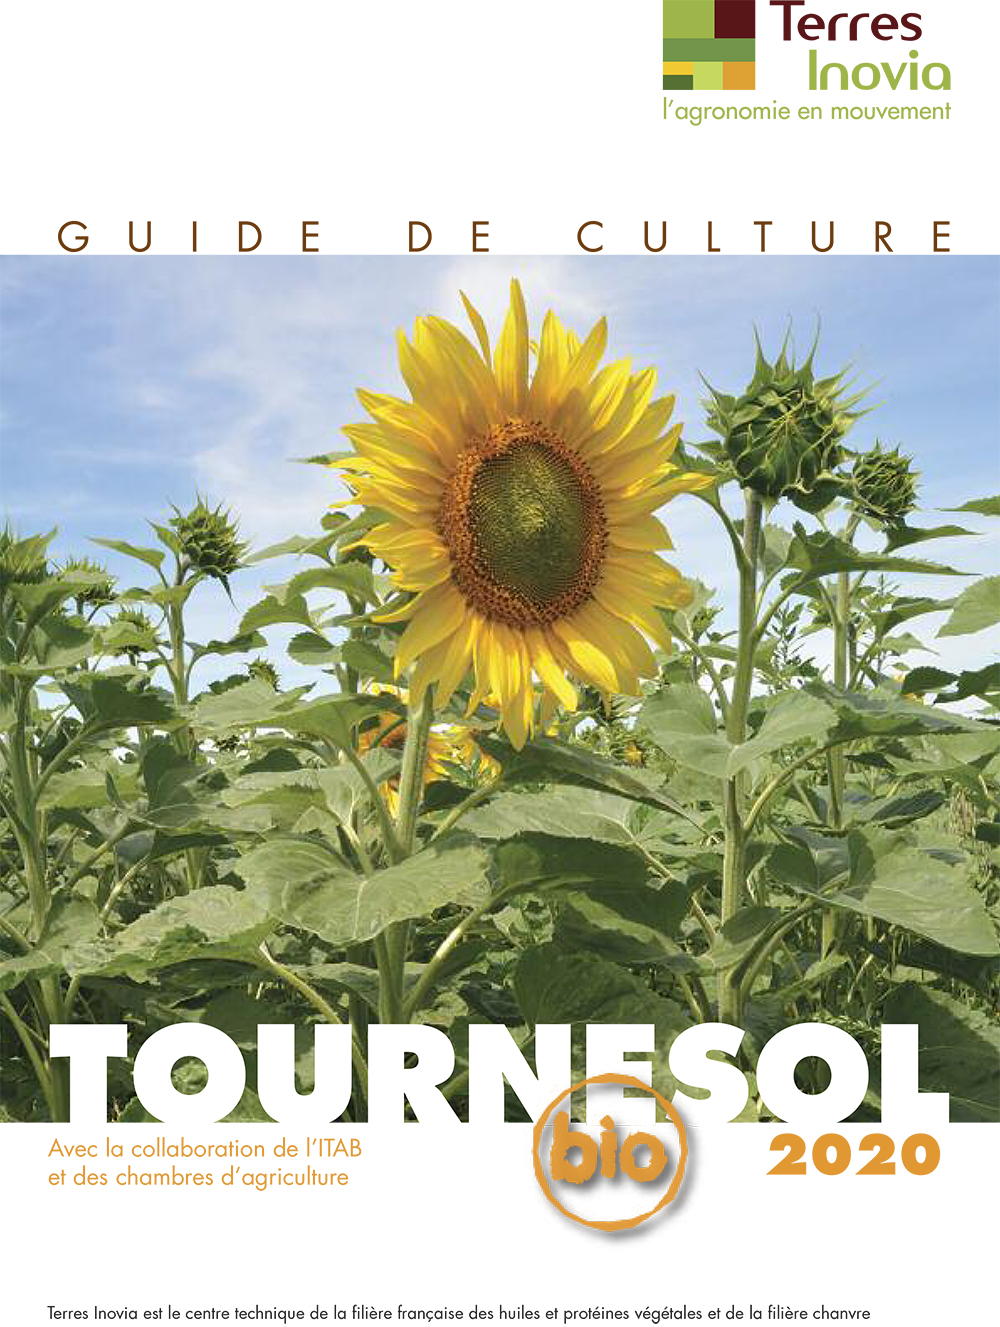 Guide de culture tournesol bio 2020